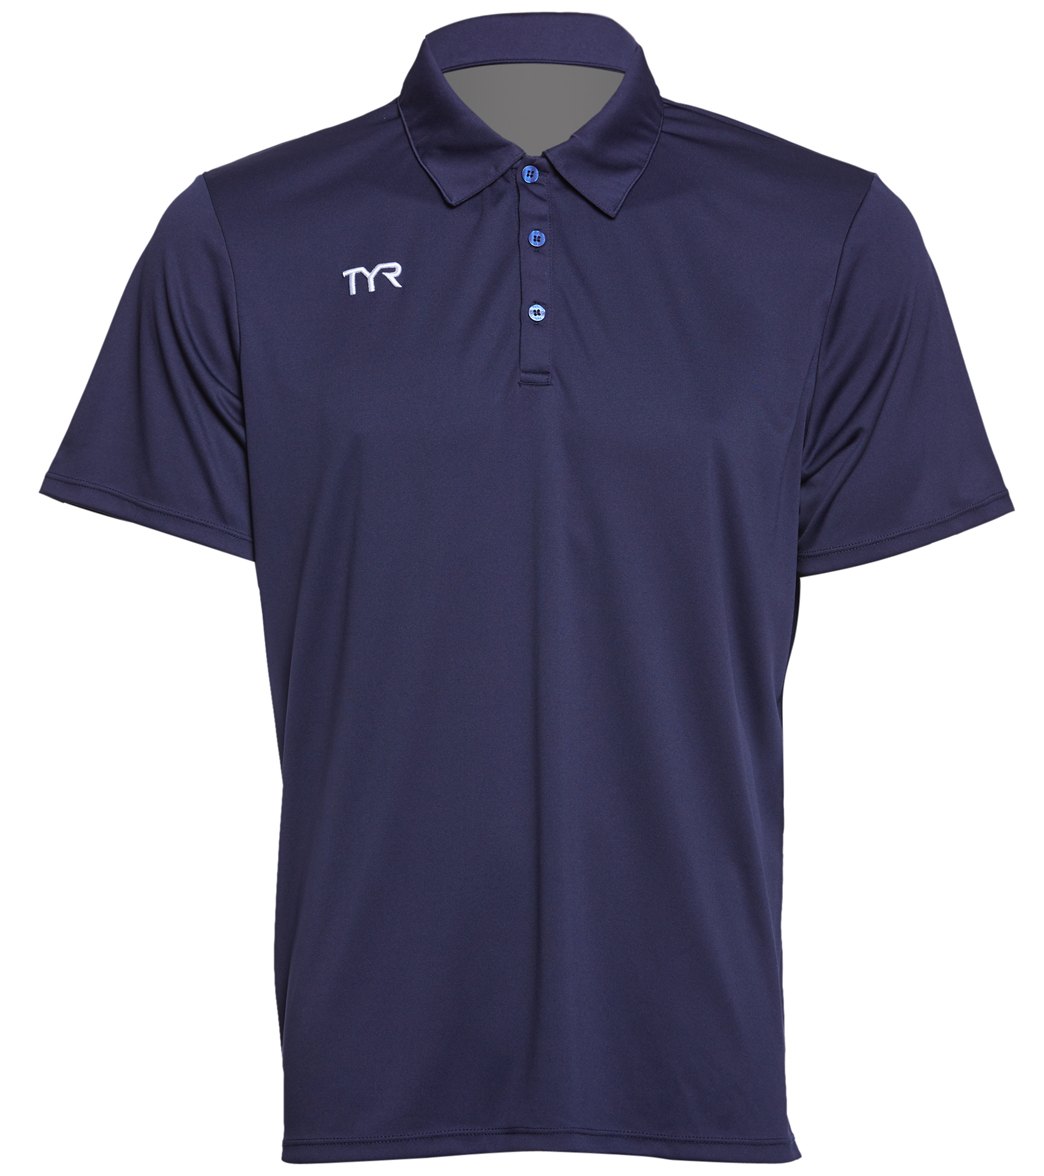 TYR Men's Alliance Coaches Polo Shirt - Navy 3Xl Polyester - Swimoutlet.com